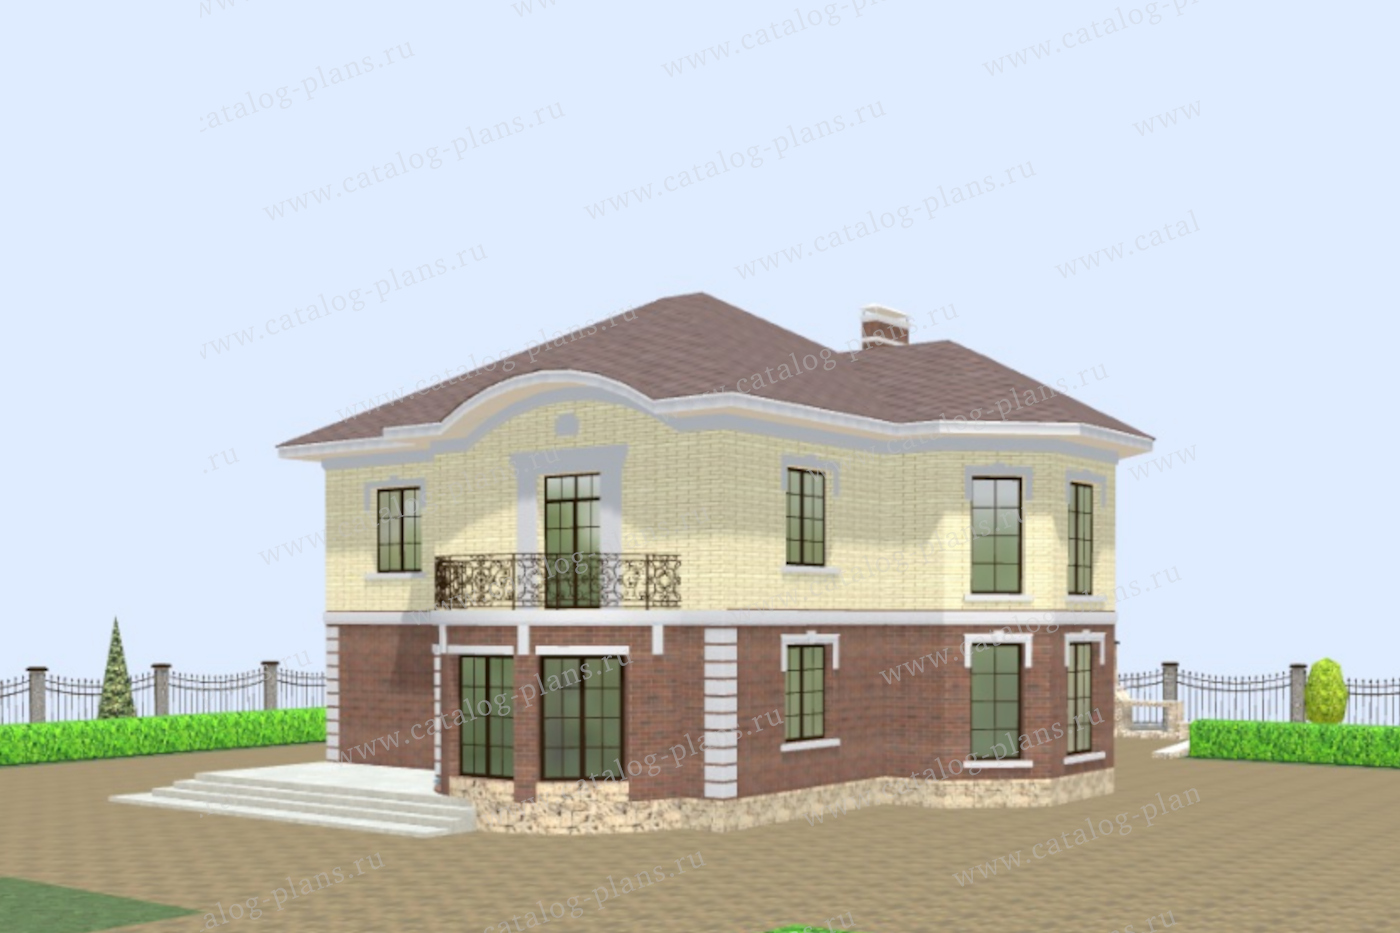 Проект 40-75CAGL, жилой дом, материал - газобетонные блоки 400, количество этажей - 2, архитектурный стиль - классический, фундамент - монолитная ж/б плита